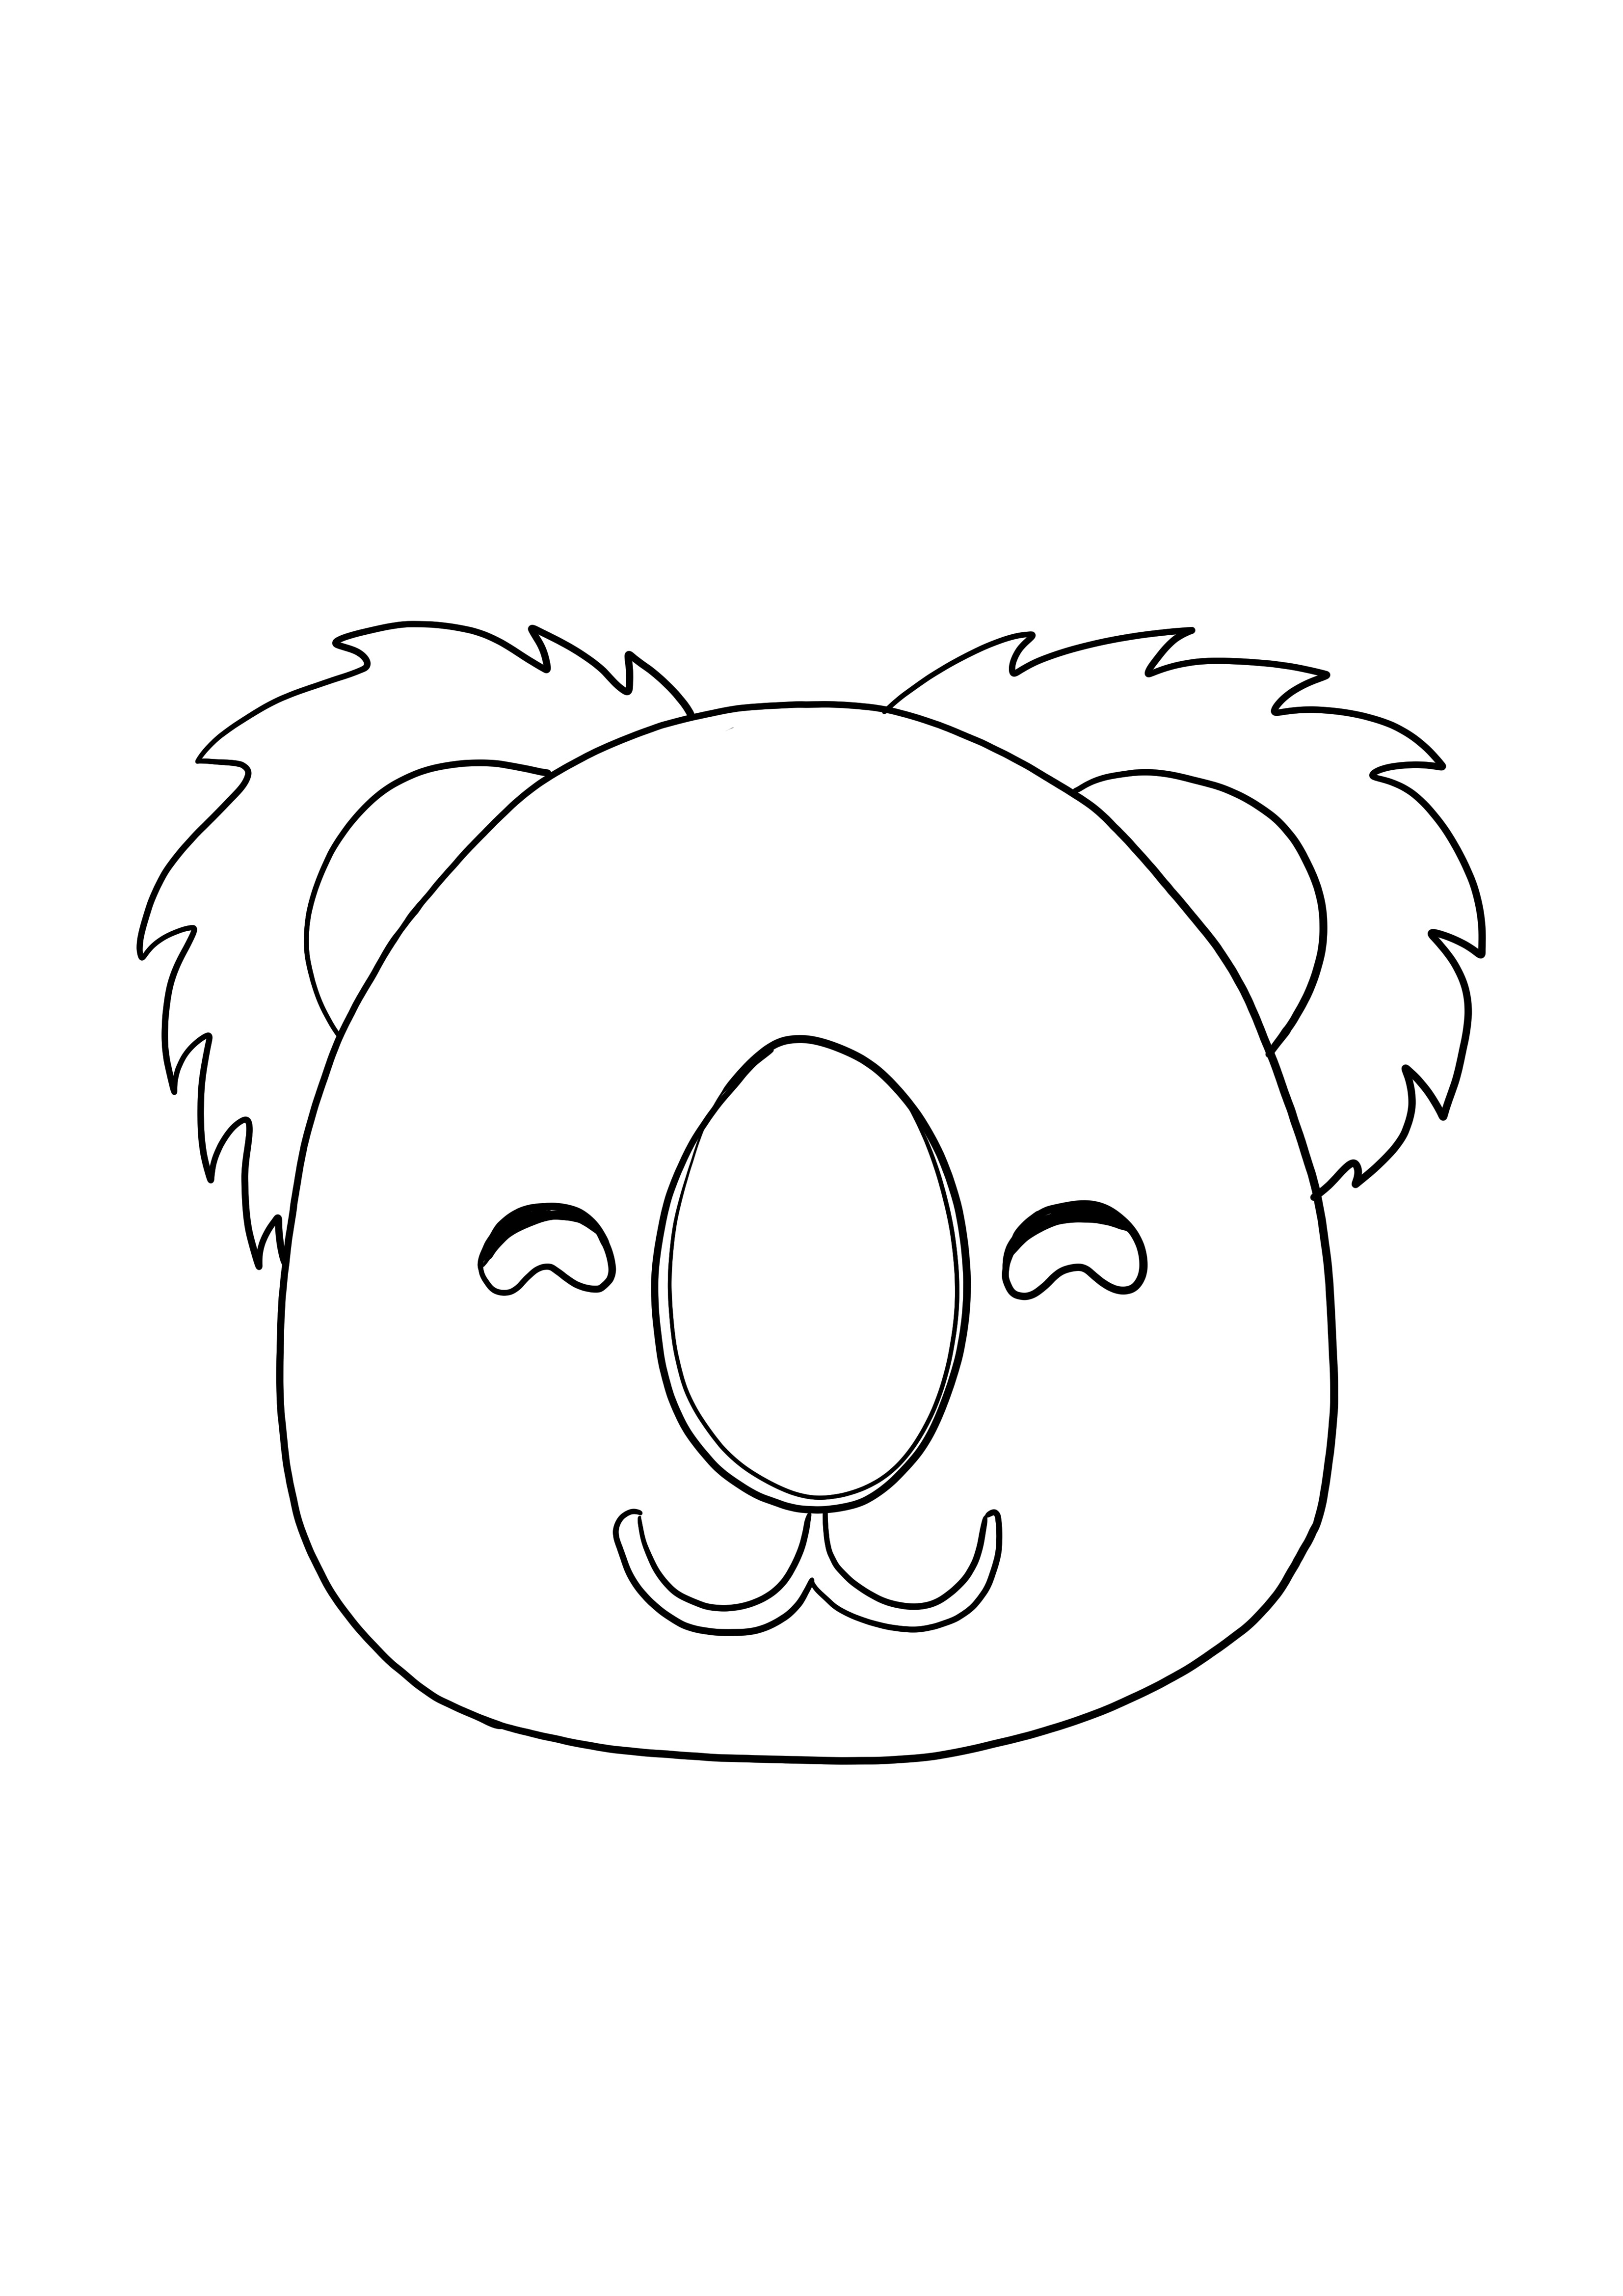 Fața Koala zâmbind imagine de colorat pentru copii gratuit